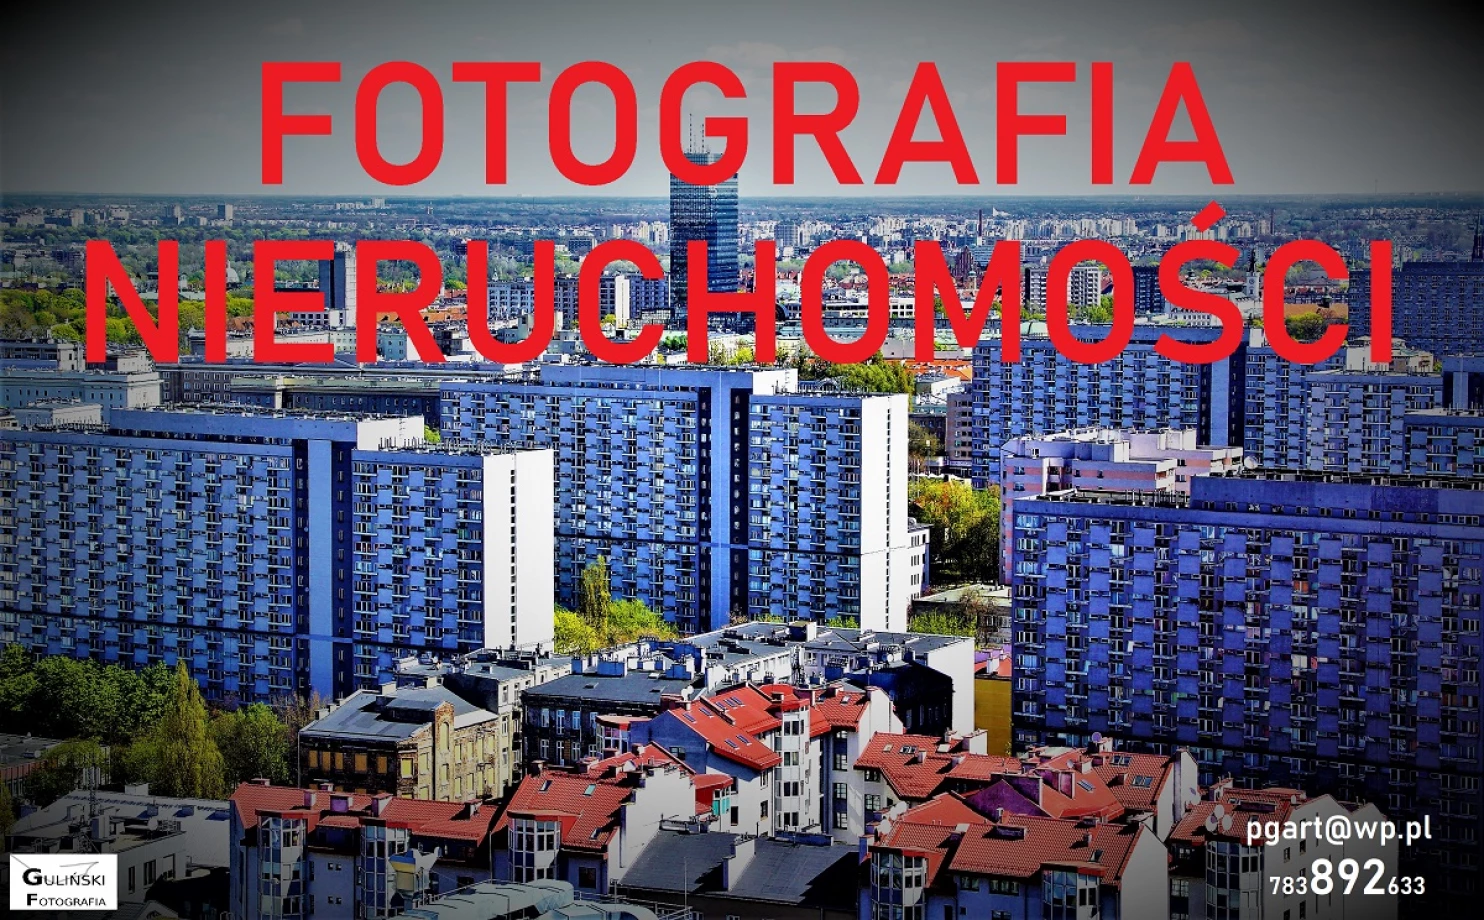 fotograf katowice pg-art-piotr-gulinski portfolio zdjecia architektury budynkow